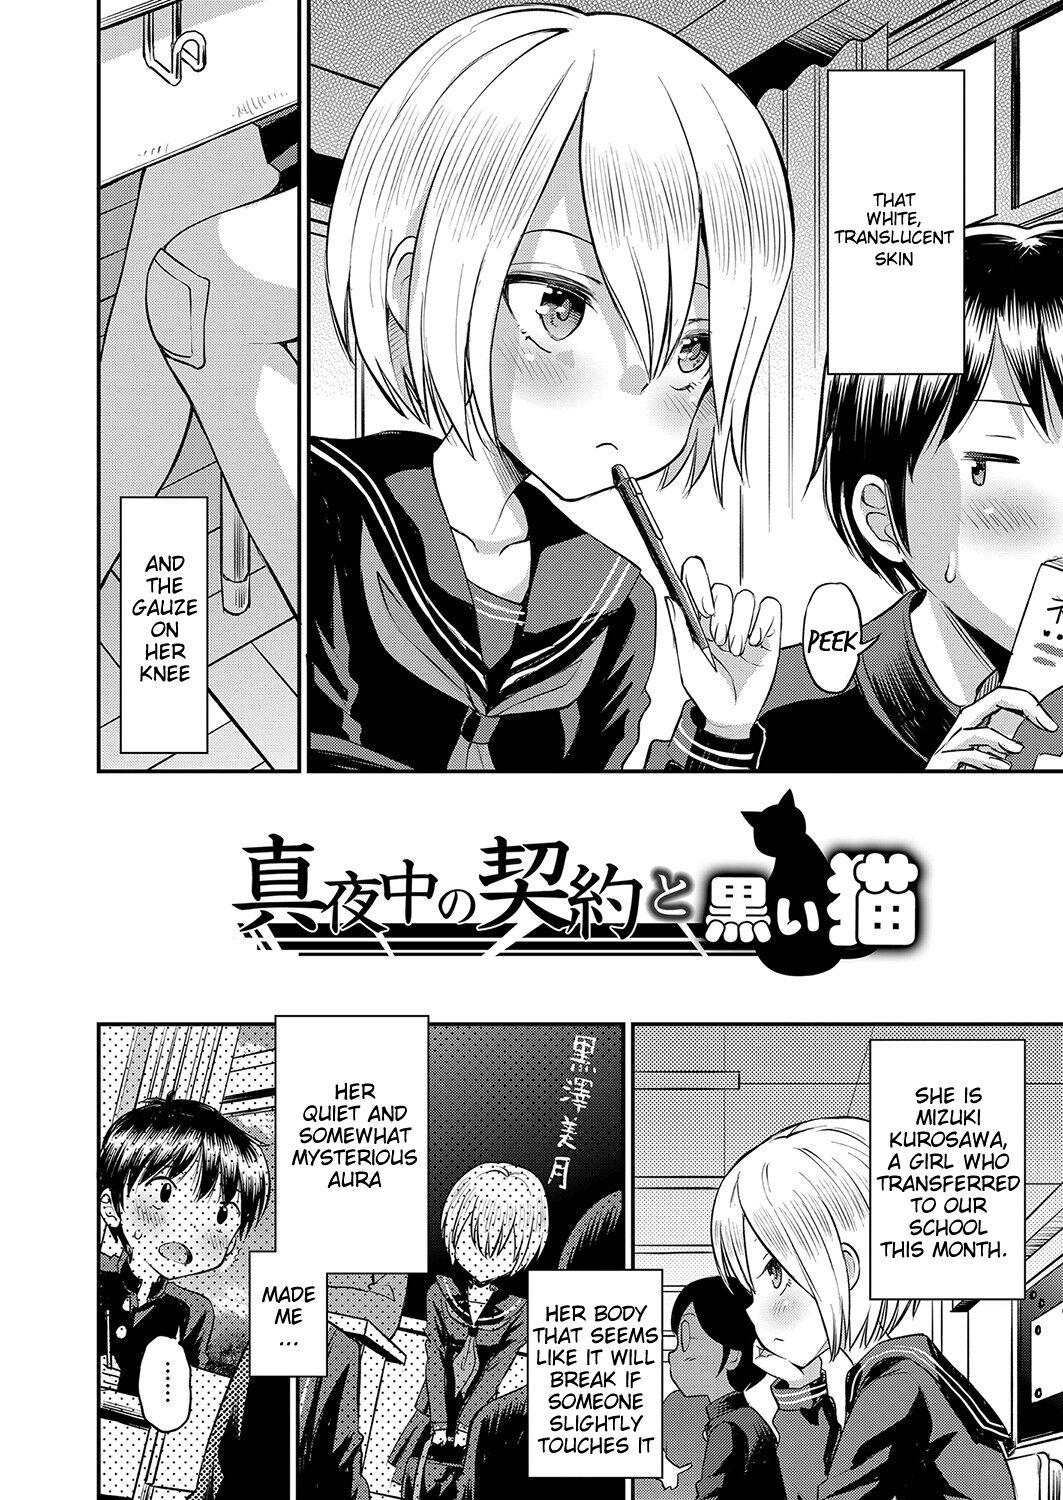 Couple Yamanu Sei e no Koukishin - Unstoppable Curiosity About SEX Maid - Page 5